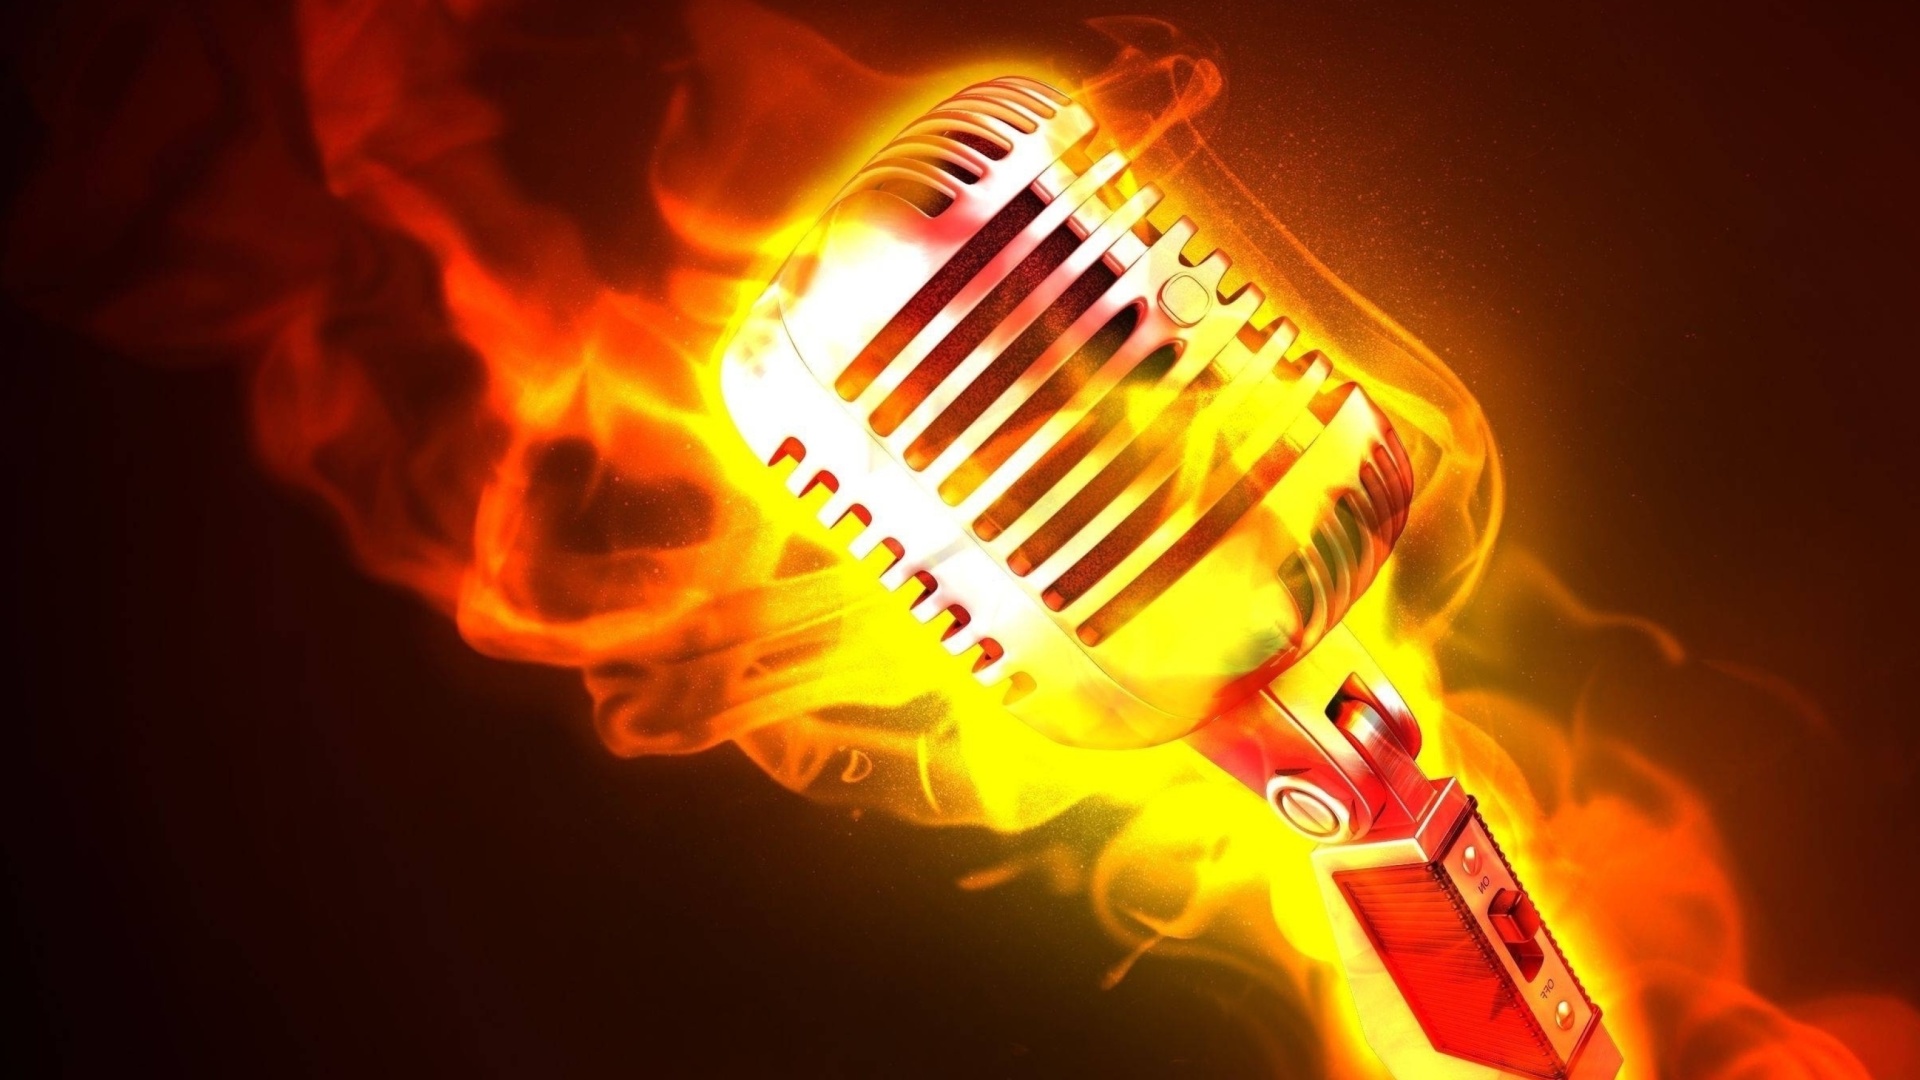 Microphone in Fire screenshot #1 1920x1080